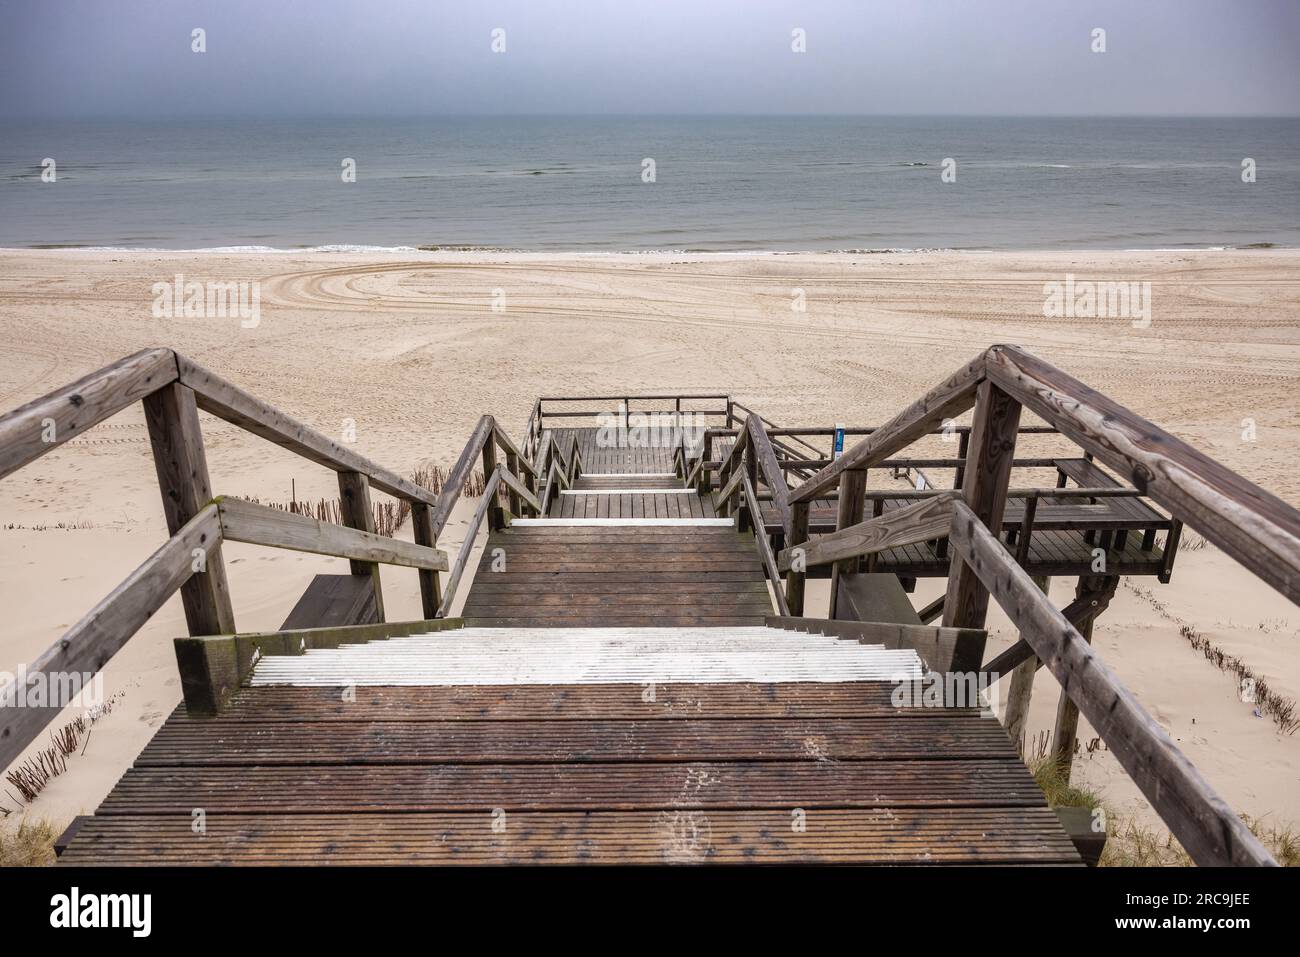 Blick von der Strandtreppe auf den Darunter liegenden, menschenleeren Weststrand von List/Sylt. Der graue Himmel hängt voller Feuchtigkeit Foto Stock